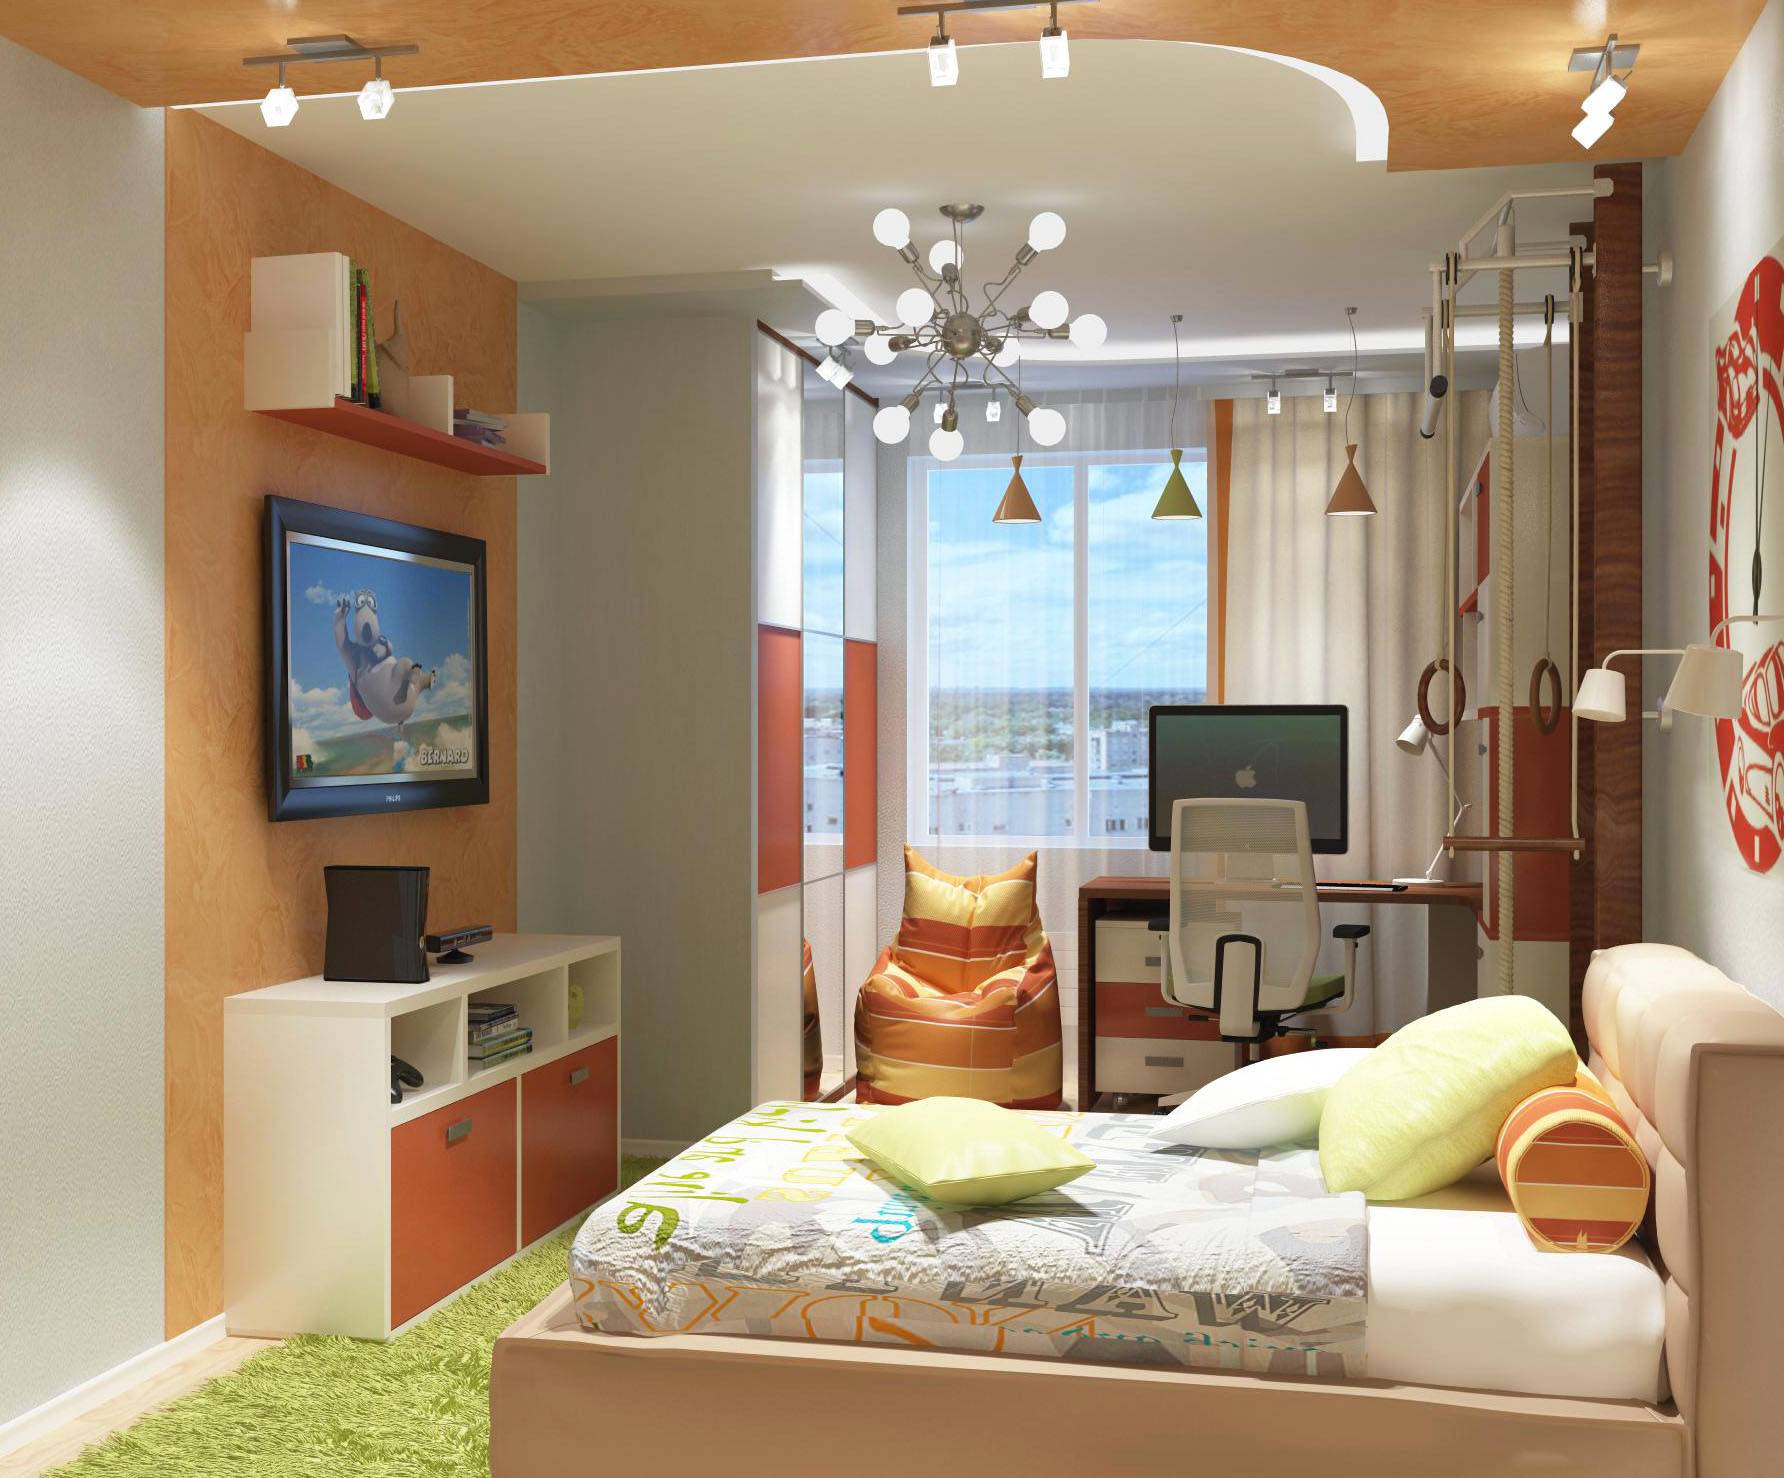 Как сделать квартиру уютной | home-ideas.ru